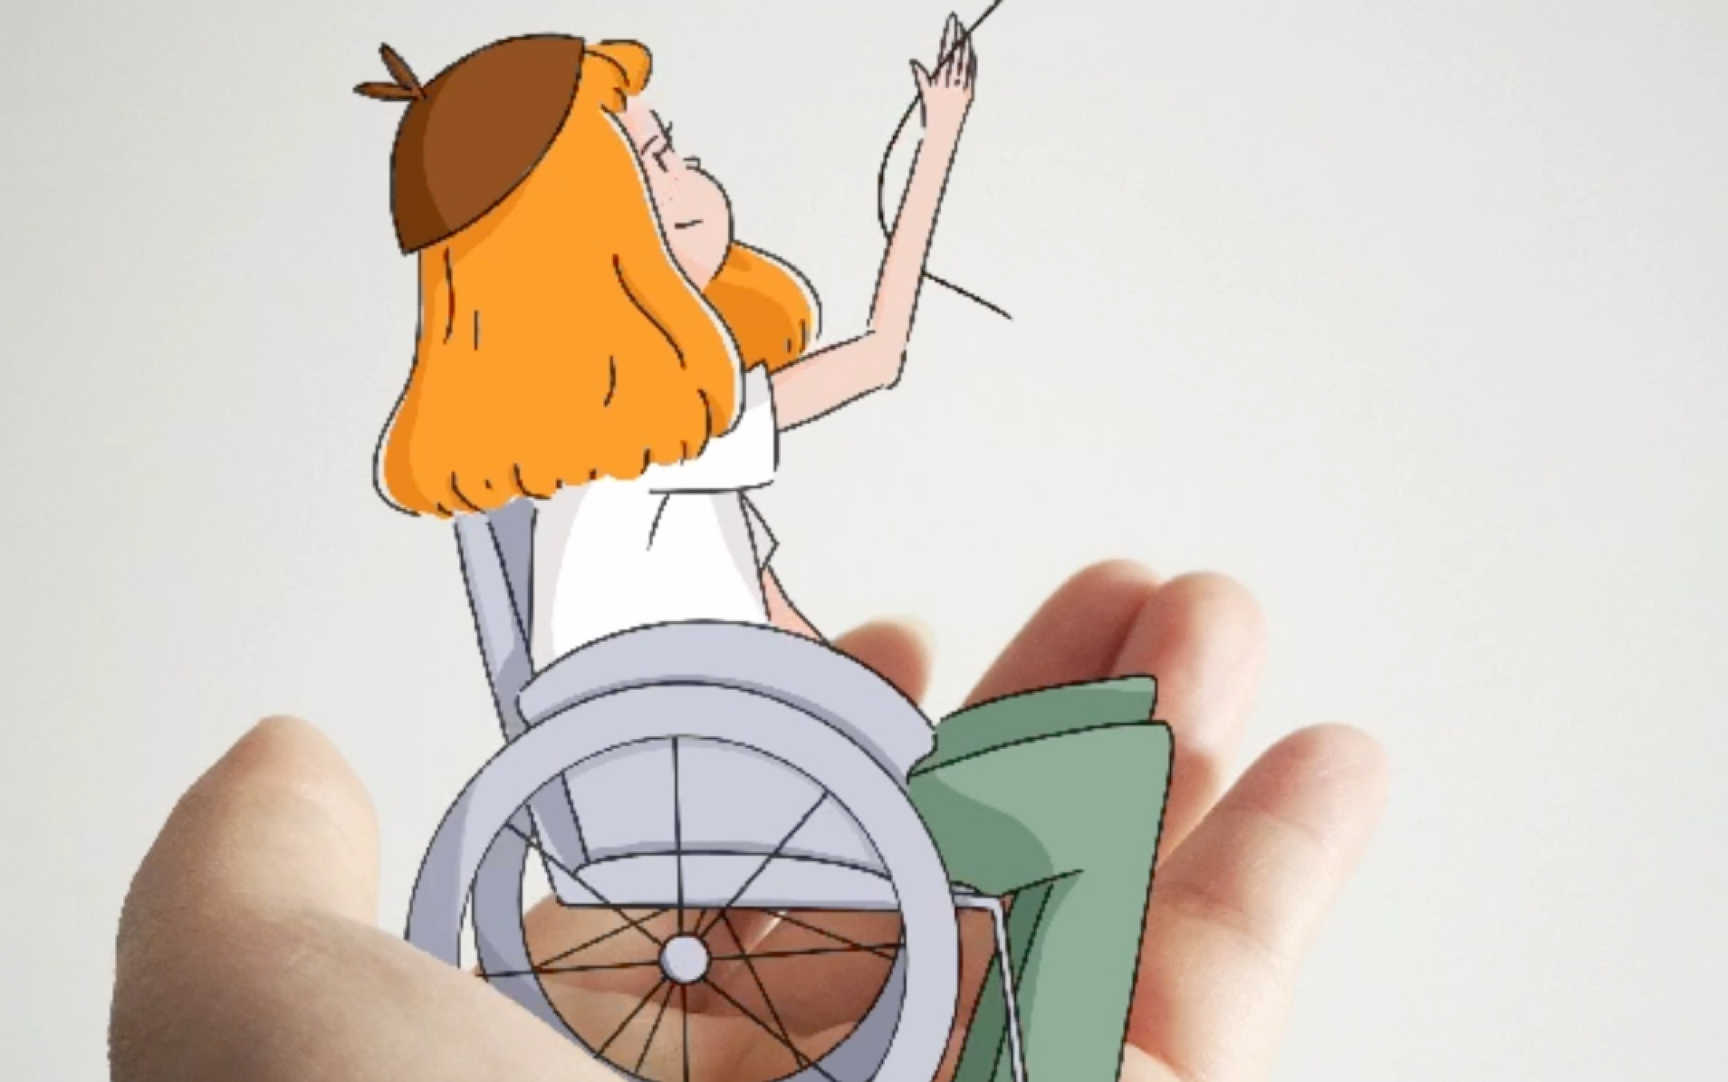 坐轮椅的小女孩简笔画图片